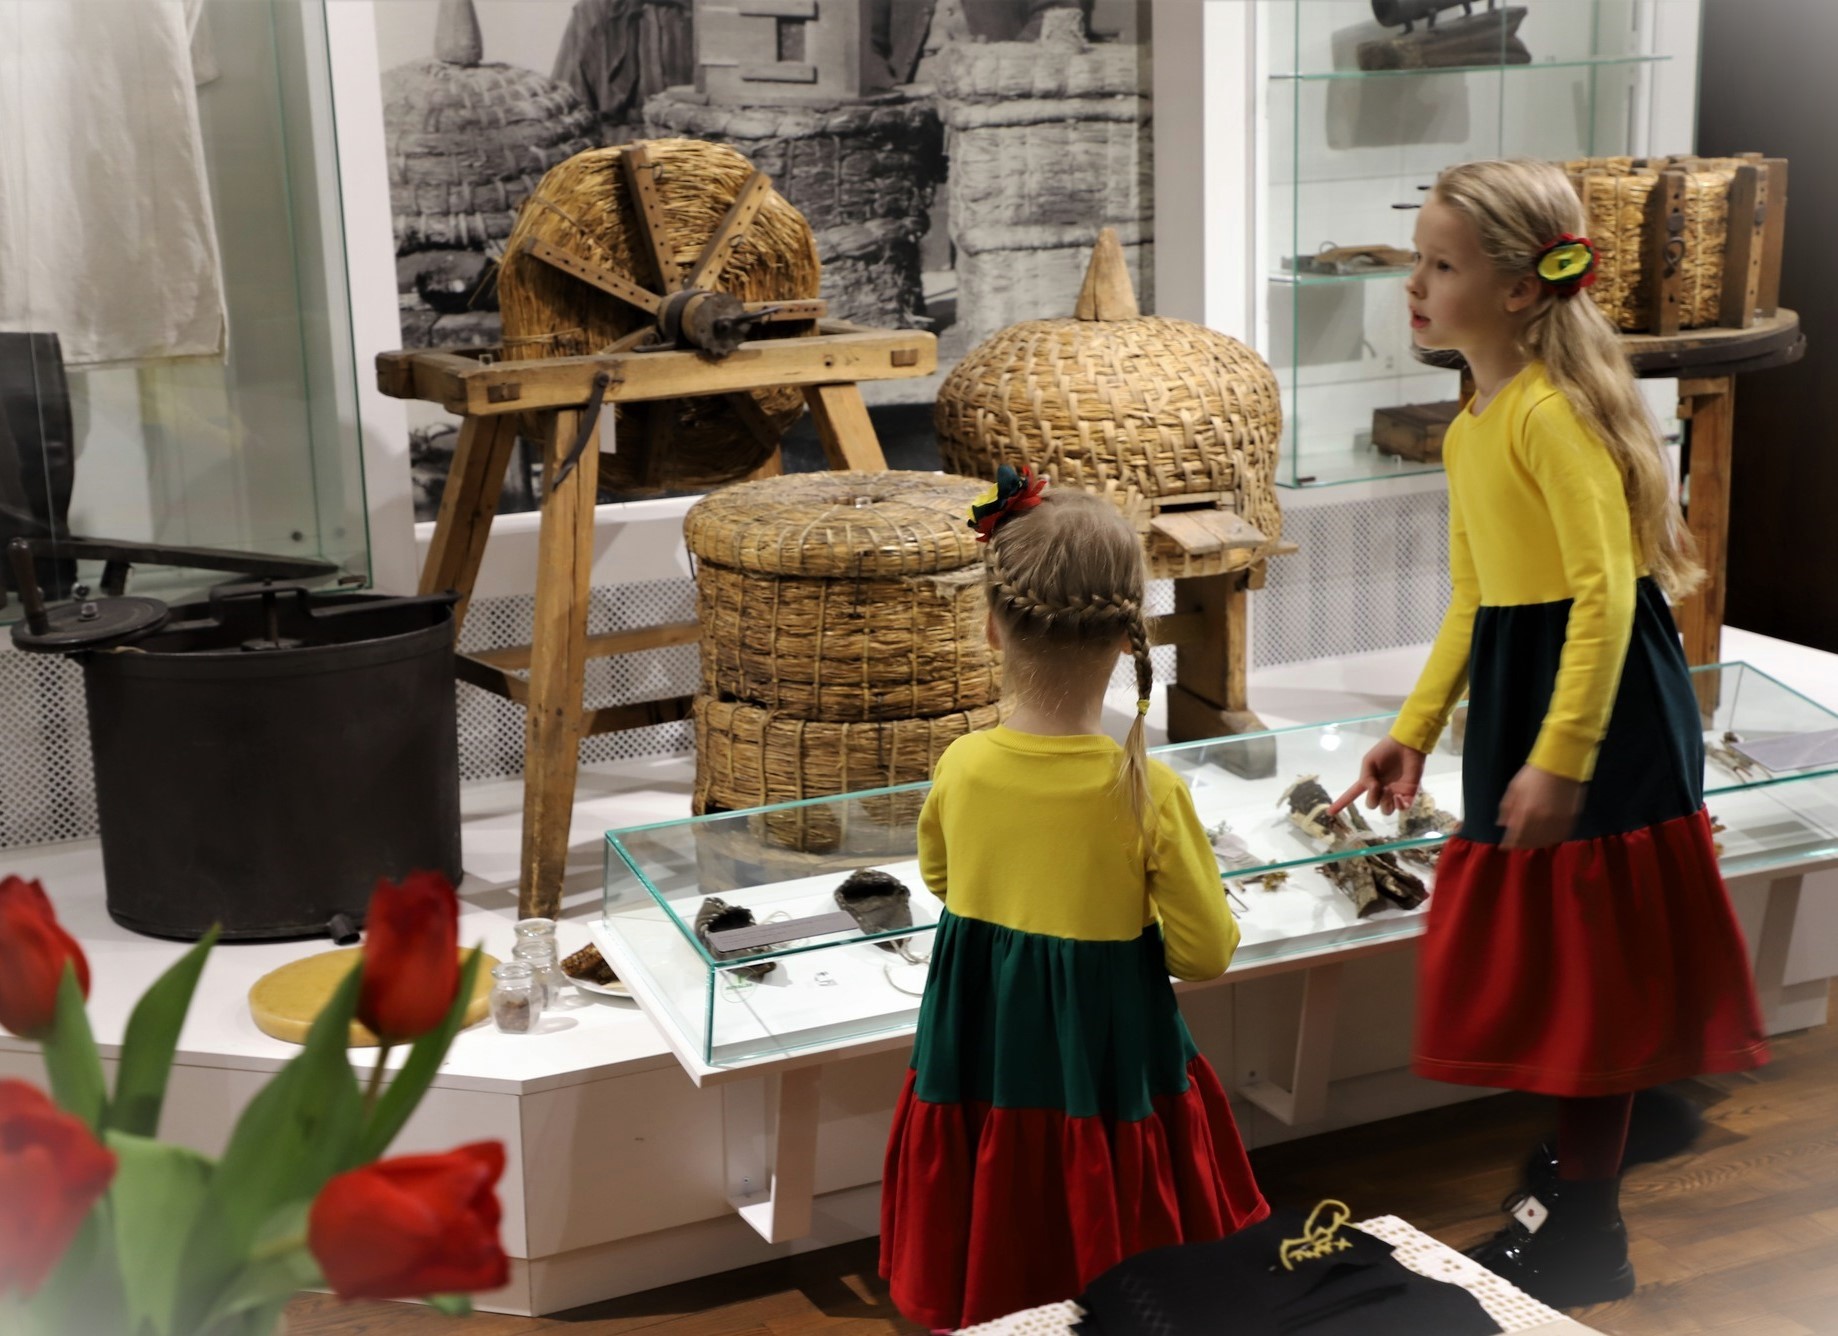 Lietuvos valstybės atkūrimo dienai – Švyturių metams skirta paroda ir nemokamas muziejų lankymas